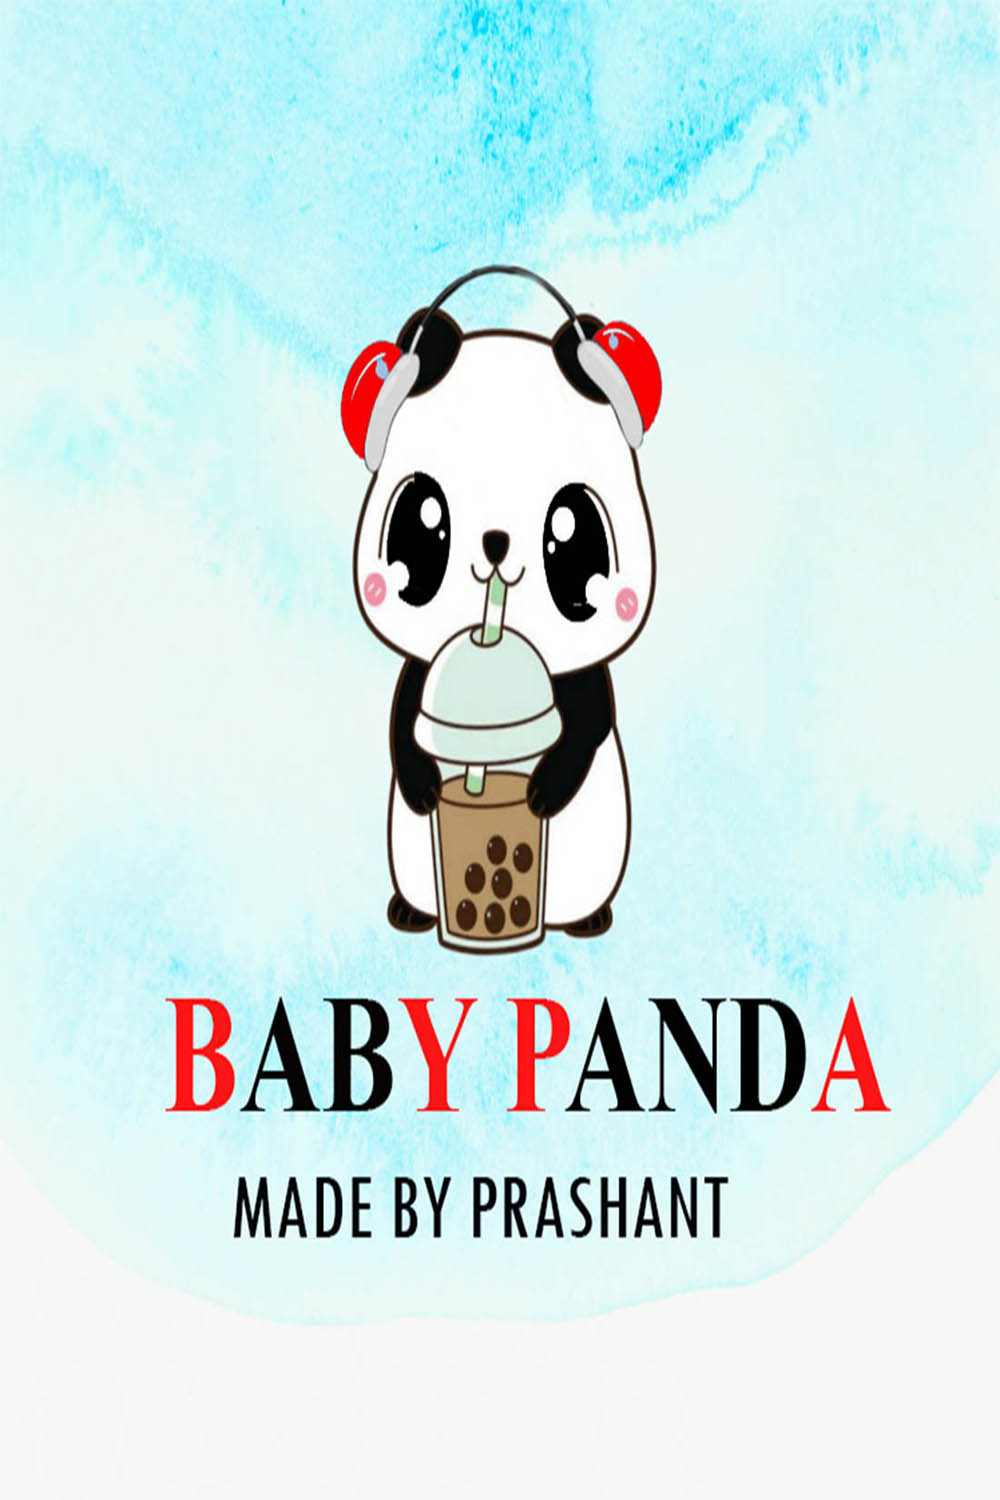 Baby Panda Logo Design pinterest image.